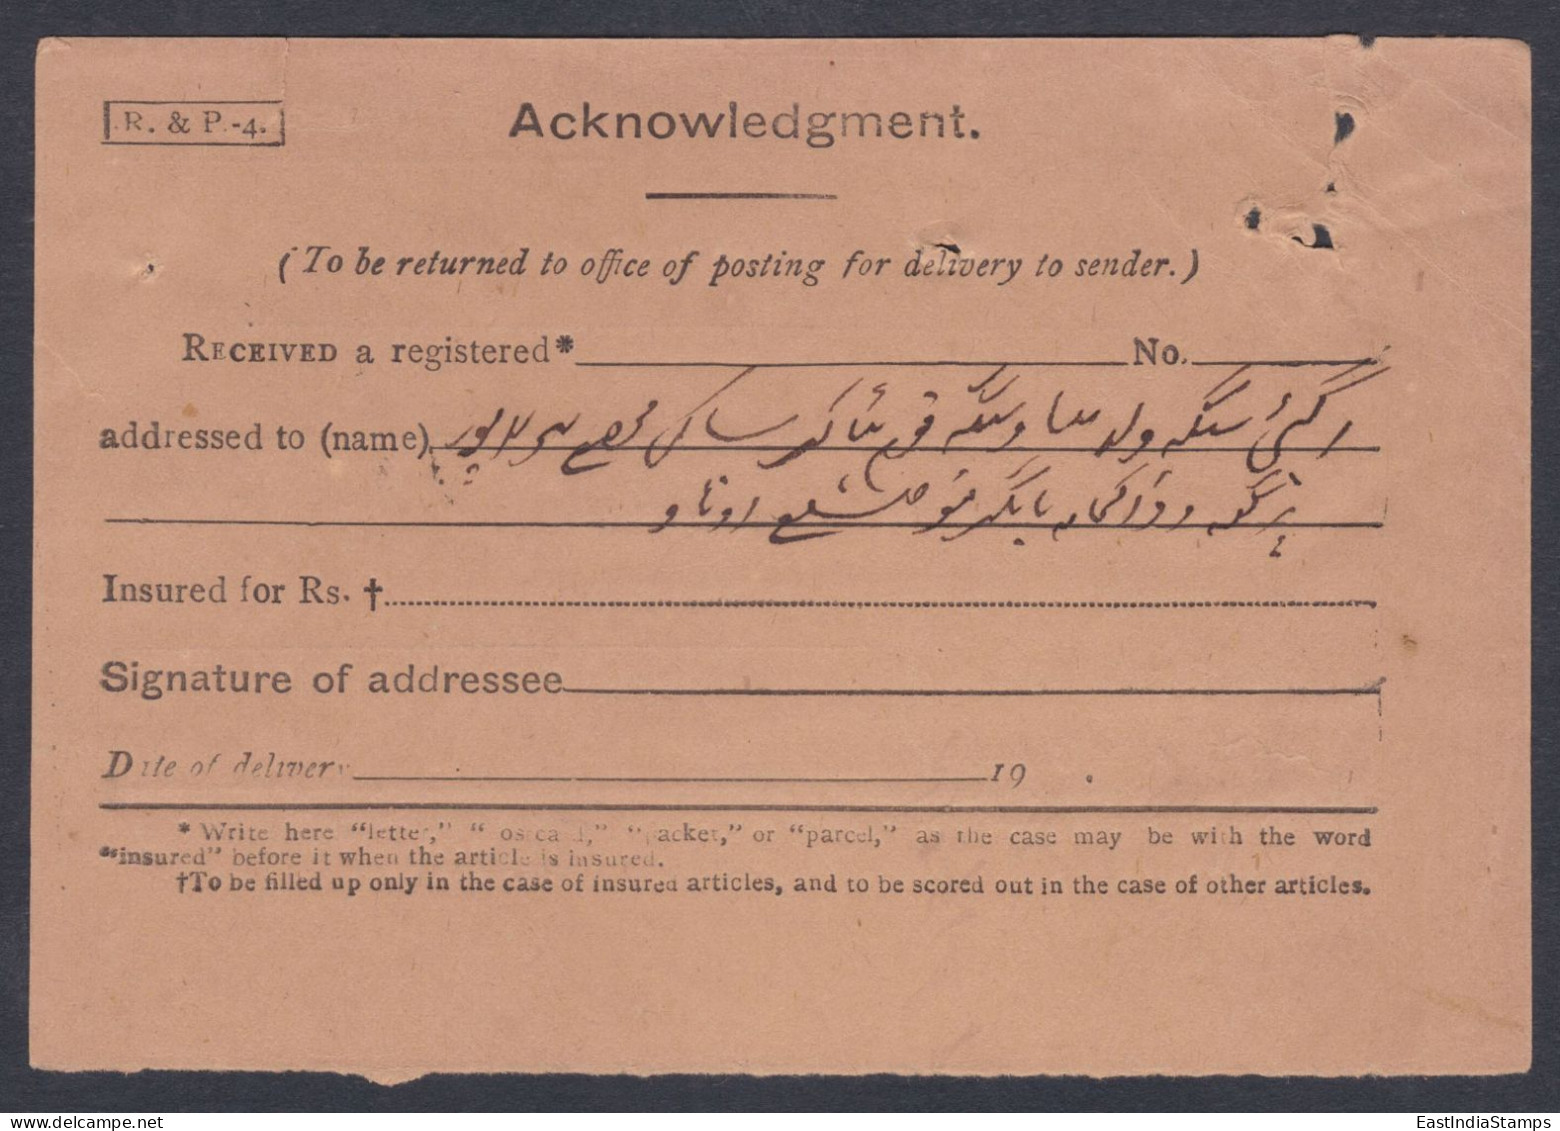 Inde British India 1913 Used Registered Cover, Civil Judge, Lucknow, King George V, Stamps, Return Mail, Acknowledgement - 1911-35 Koning George V